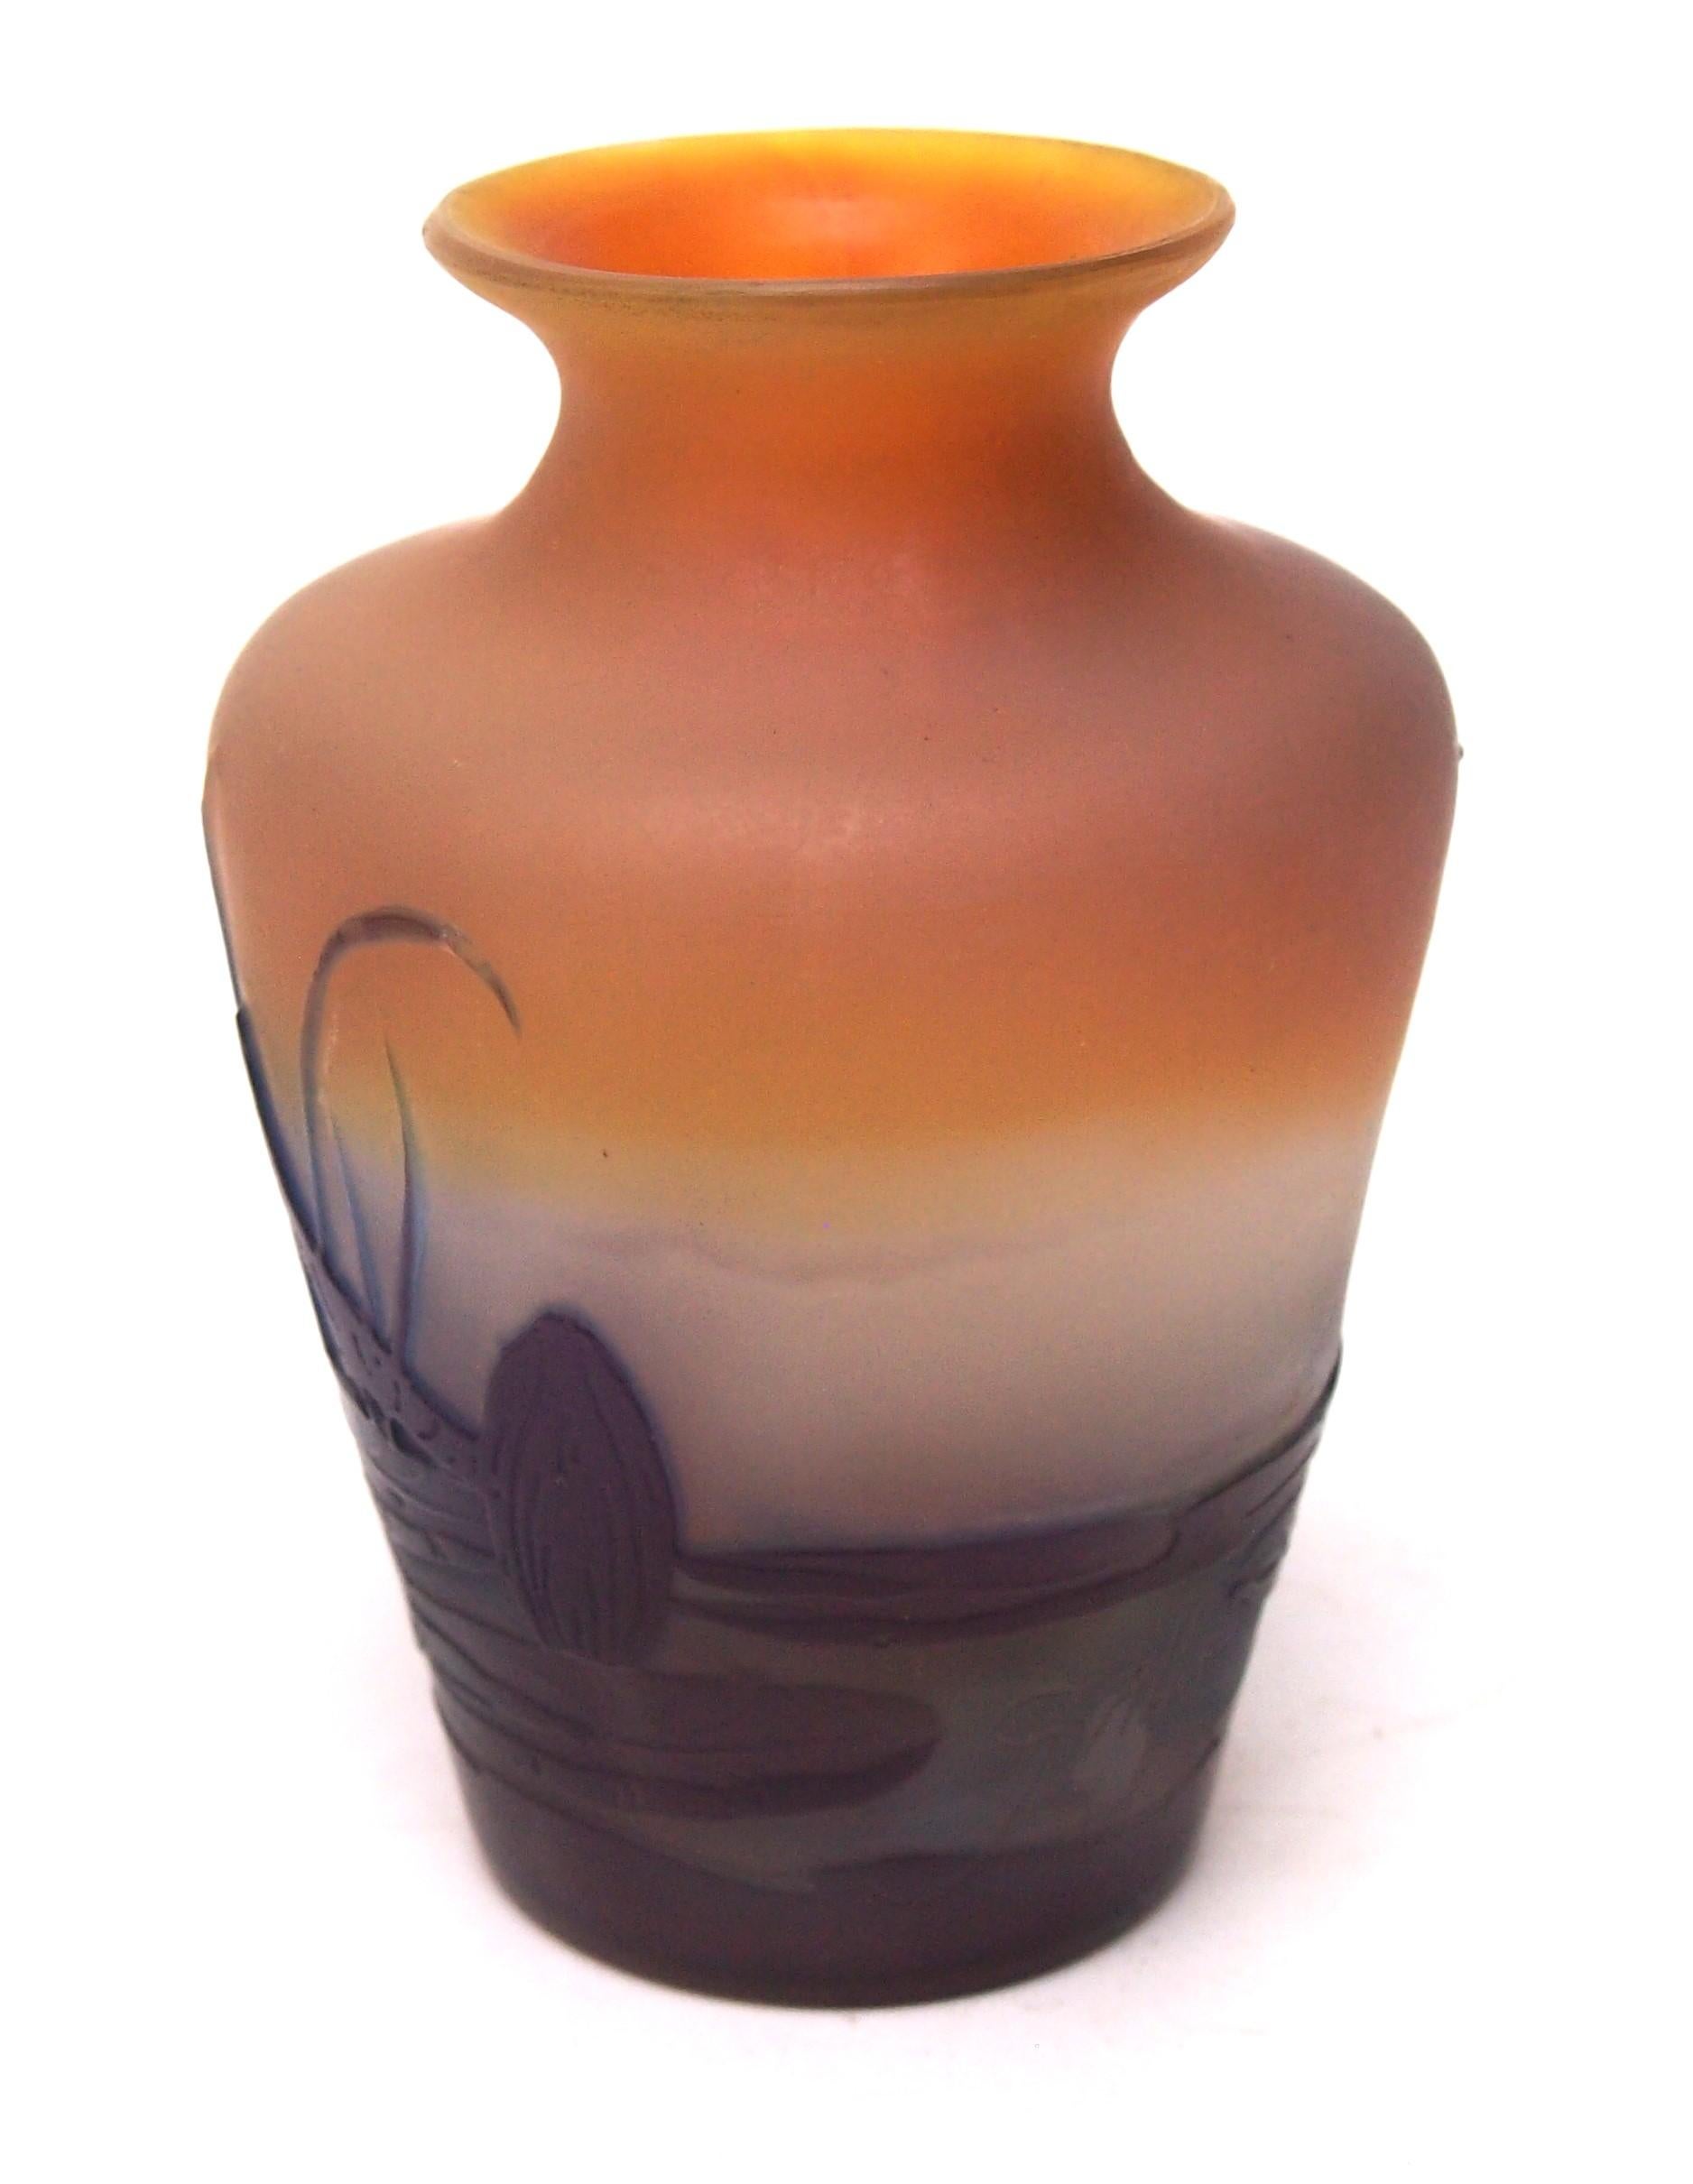 Fabuleux et mignon petit vase aquatique en camée d'Emile Galle en trois couleurs, violet et orange, sur une couche opale inhabituelle représentant une scène d'étang avec des Nénuphars (nénuphars) bourgeonnants et fleuris, des herbes et des Flèches